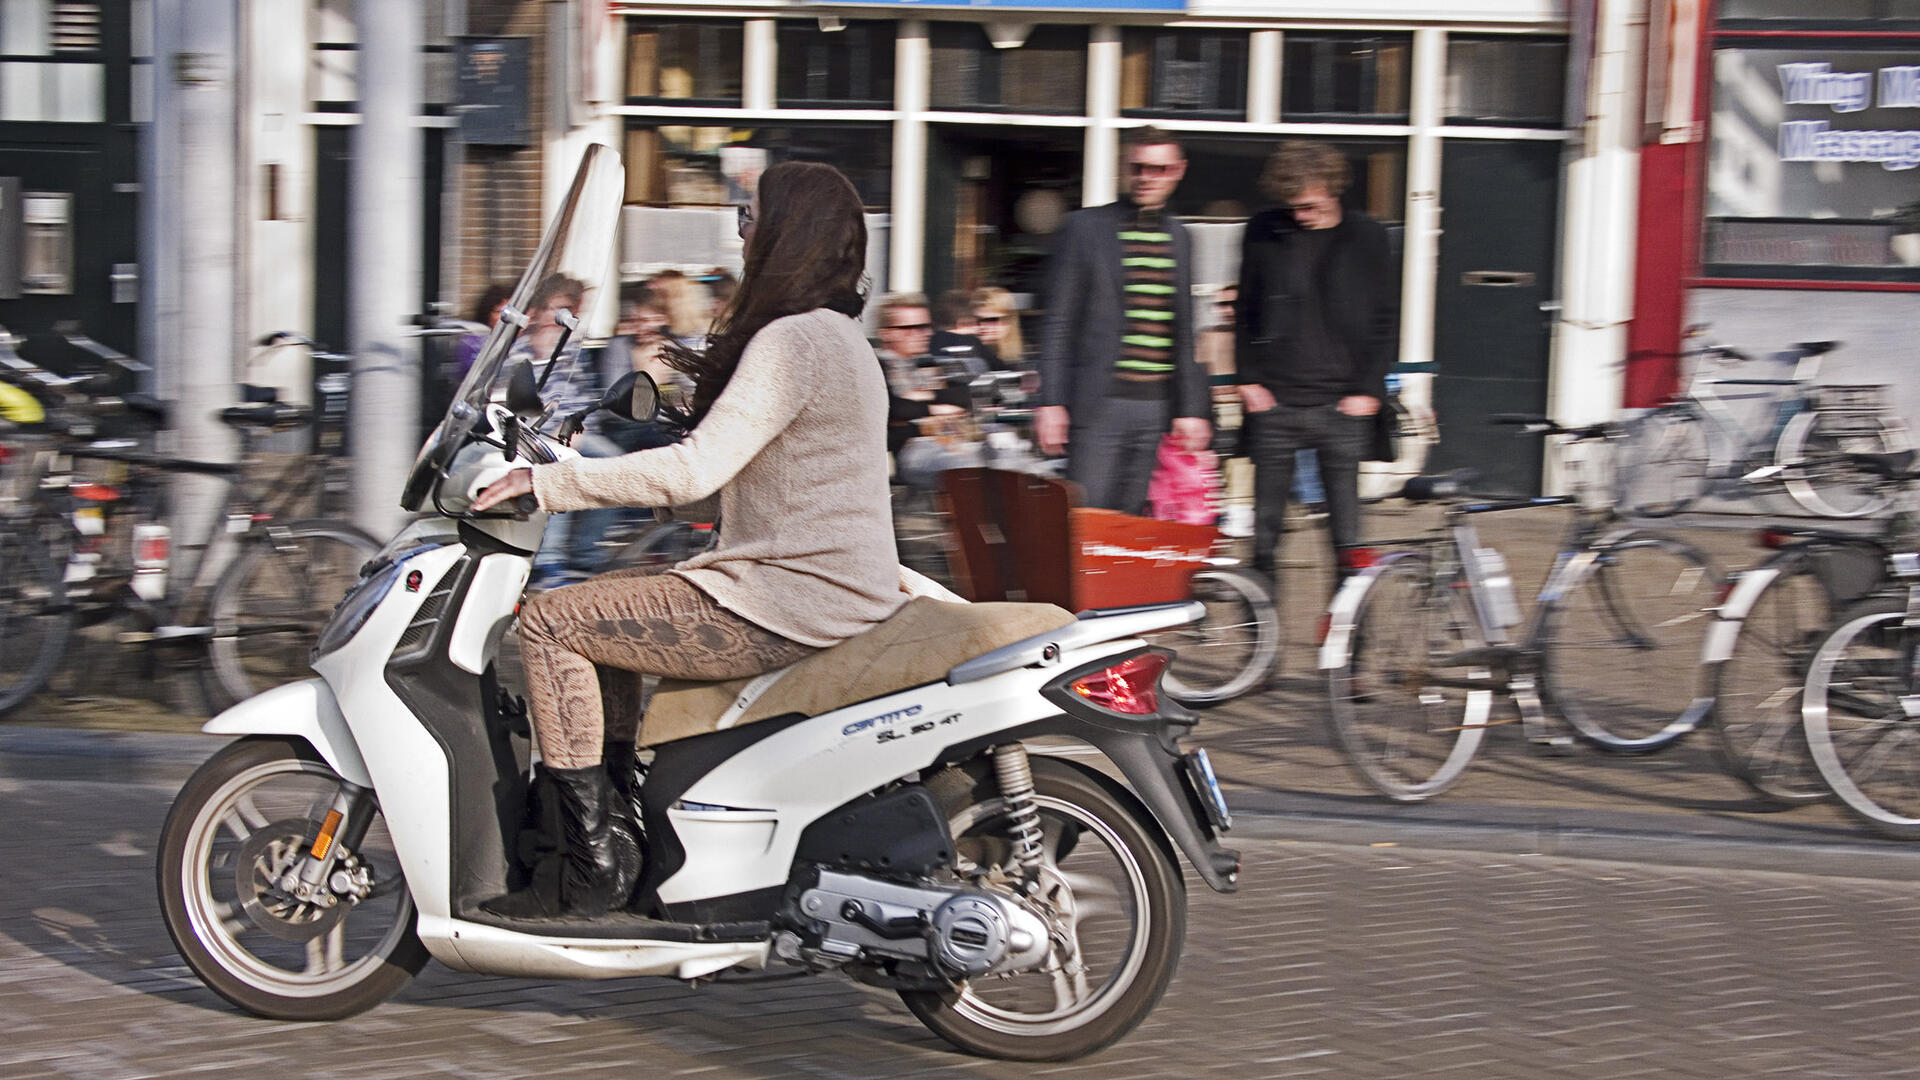 Een jonge vrouw rijdt op een scooter door een straat. Op de achtergrond staan twee mannen op de stoep, met om zich heen geparkeerde fietsen.